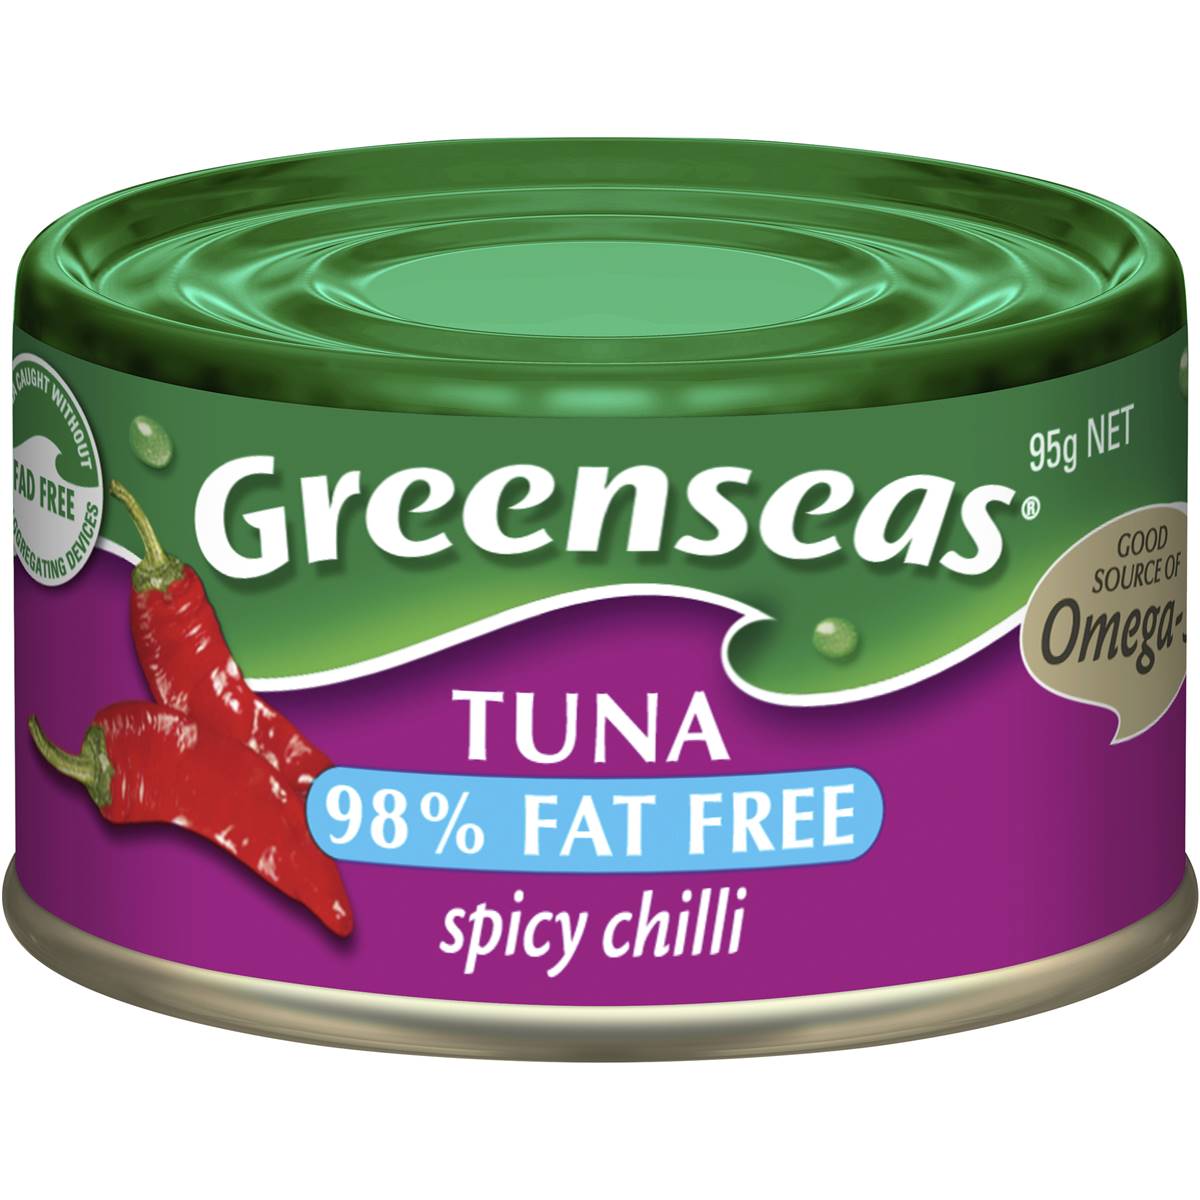 Calories in Greenseas Tuna Spicy Chilli Spicy Chilli